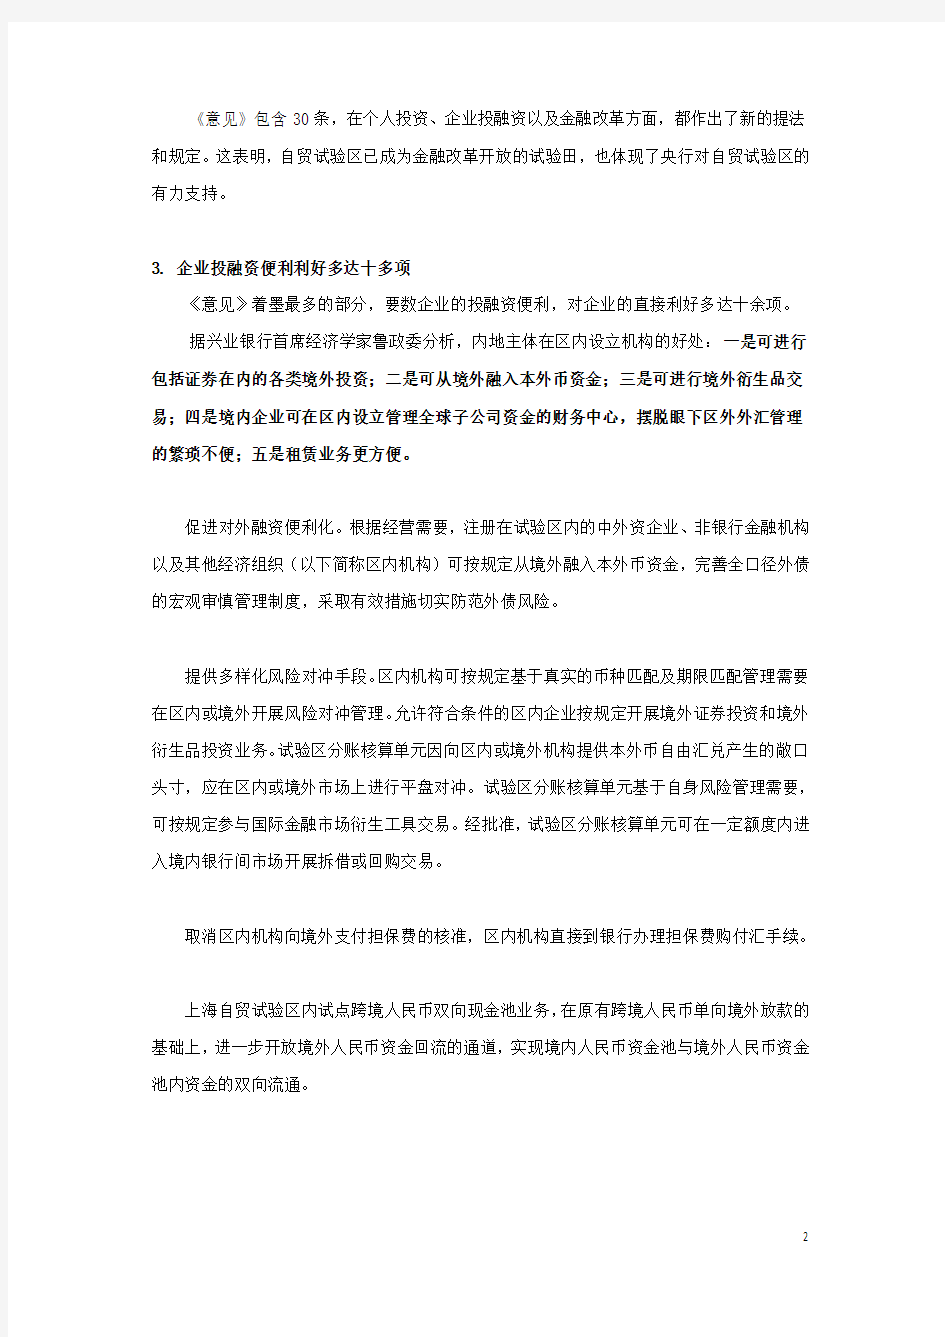 关于上海自贸试验区的金融等政策及解读